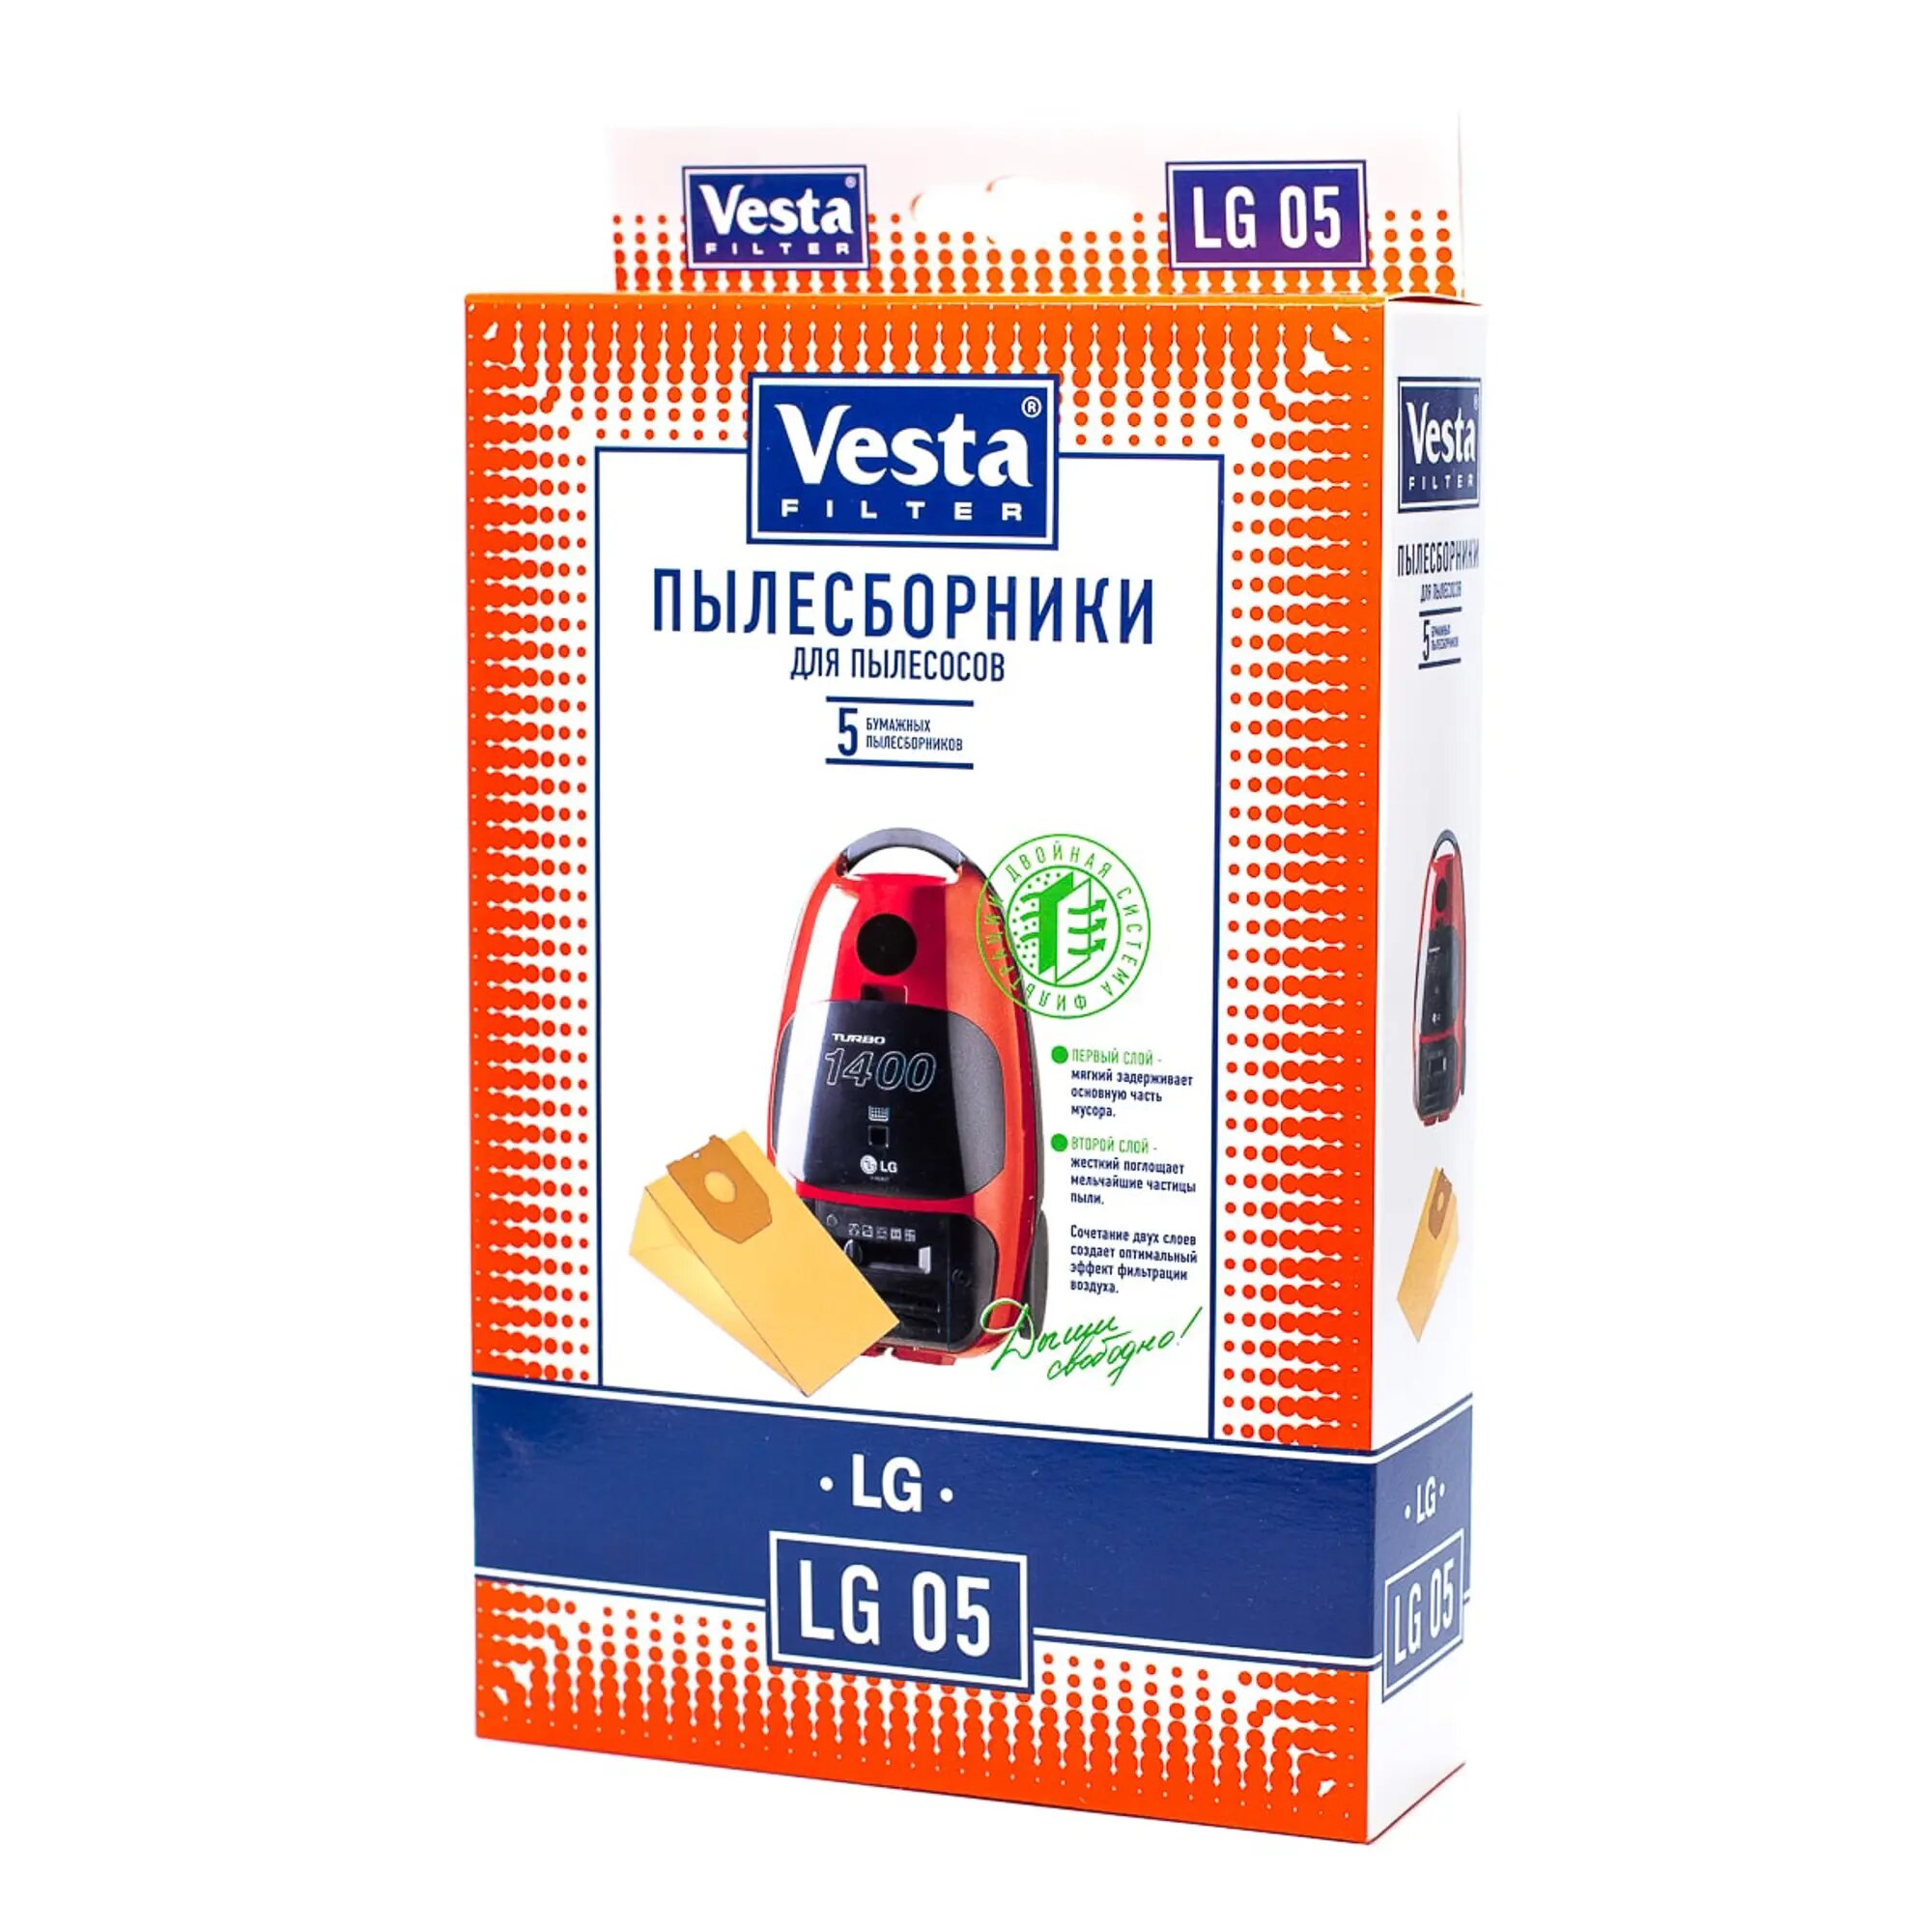 Vesta filter Бумажные пылесборники LG 05, 5 шт. - фото №19